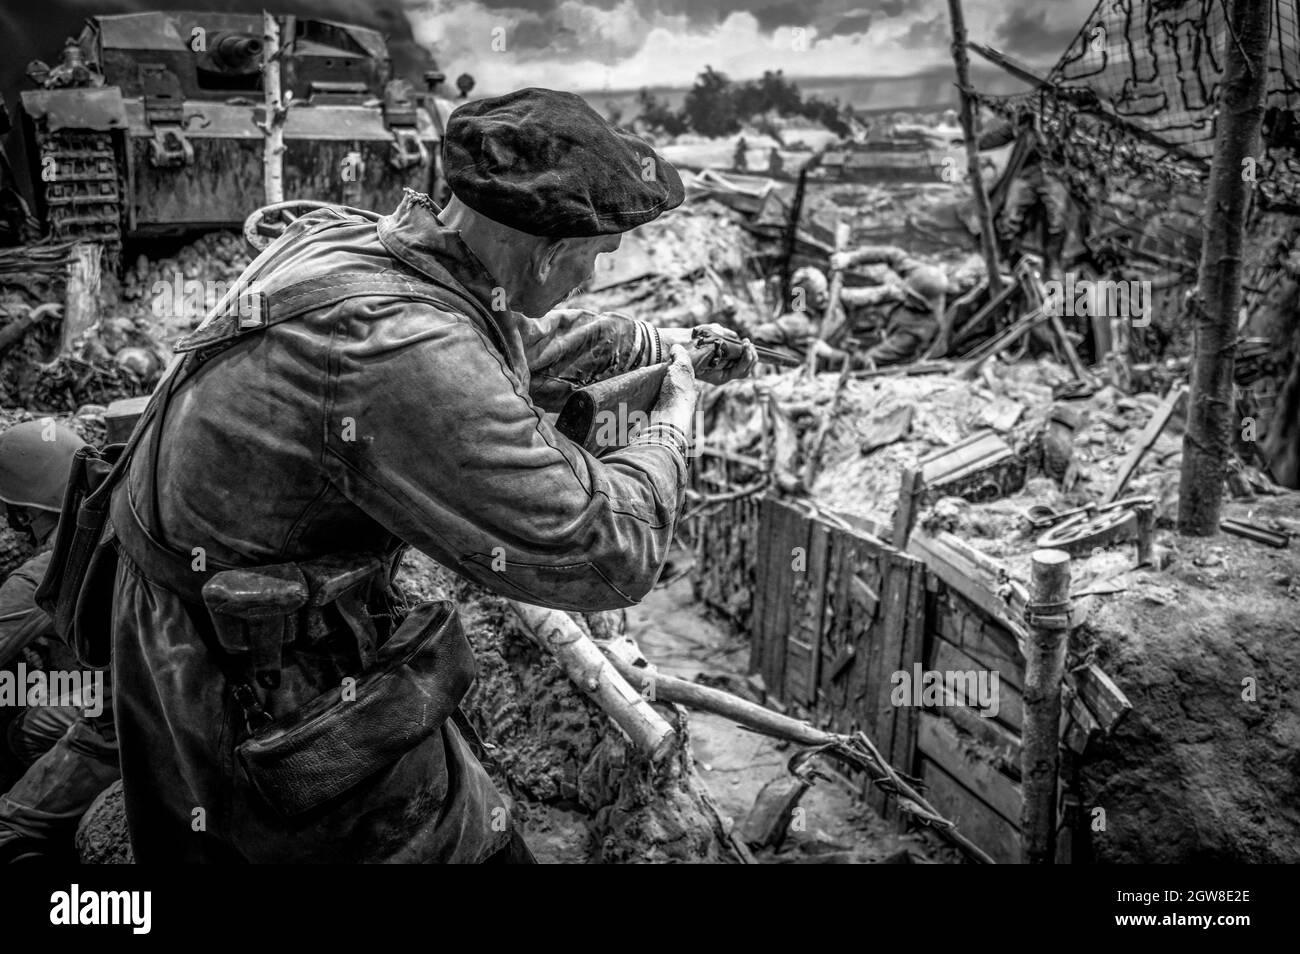 Alter sowjetischer Soldat, der mit einem Gewehr auf seinen Feind zielte. Historisches Diorama des Zweiten Weltkriegs mit dem Titel „Memory Speaks. A Way Through the war“. Schwarz und Weiß. Stockfoto